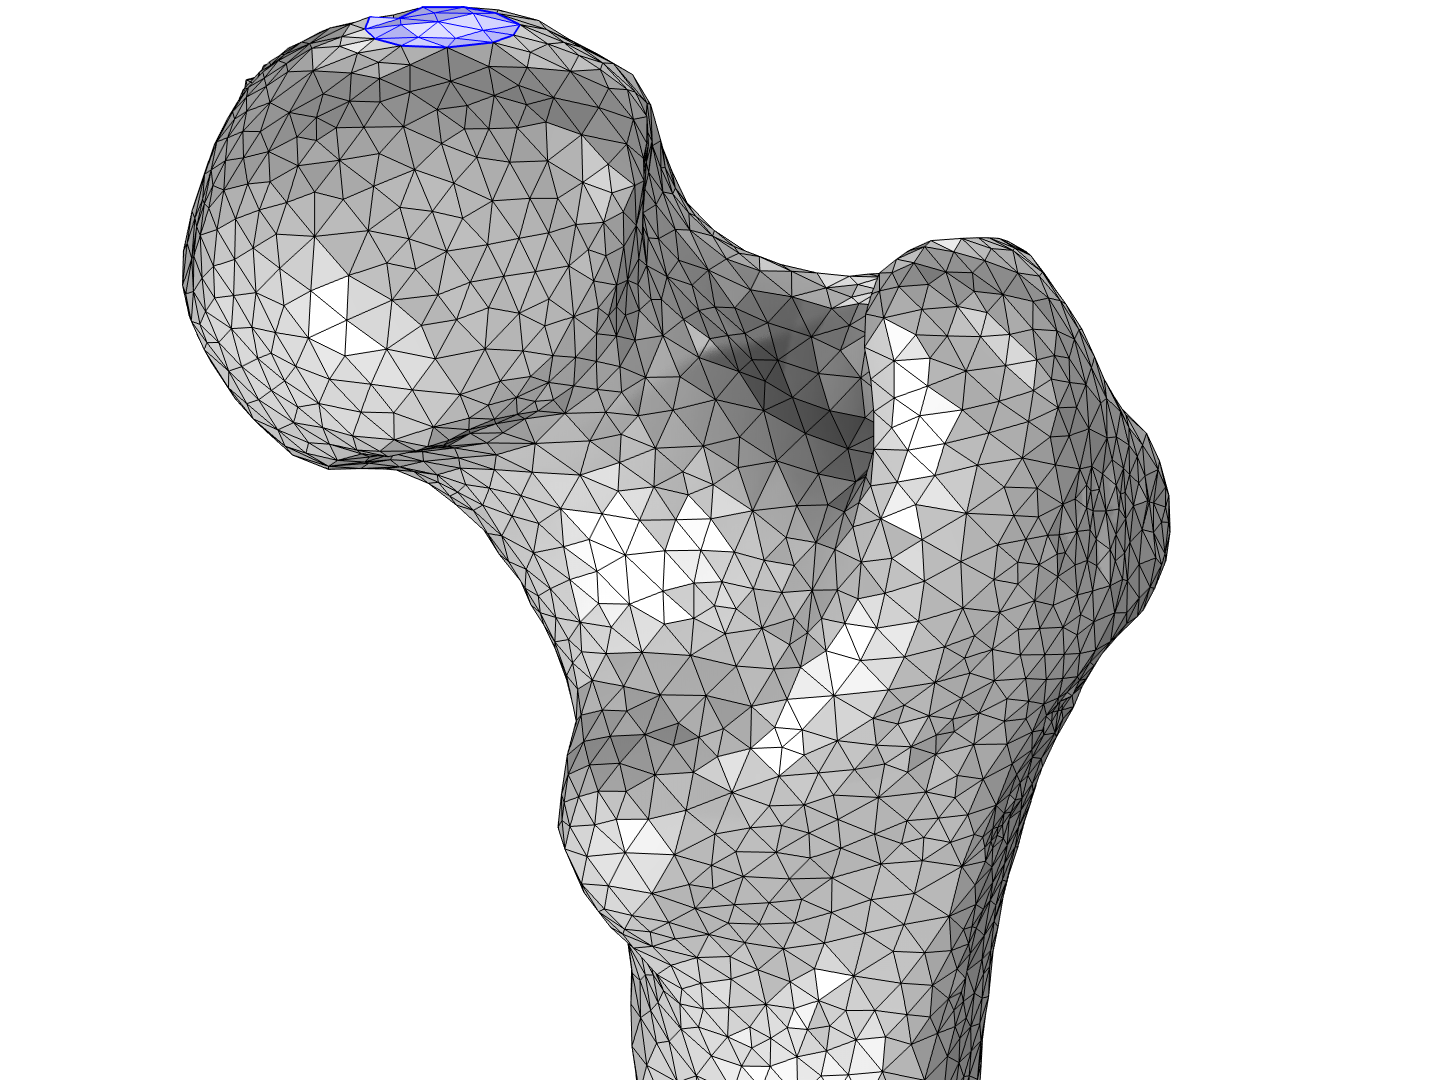 股骨的网格，其中顶部的部分用蓝色圆圈突出显示。